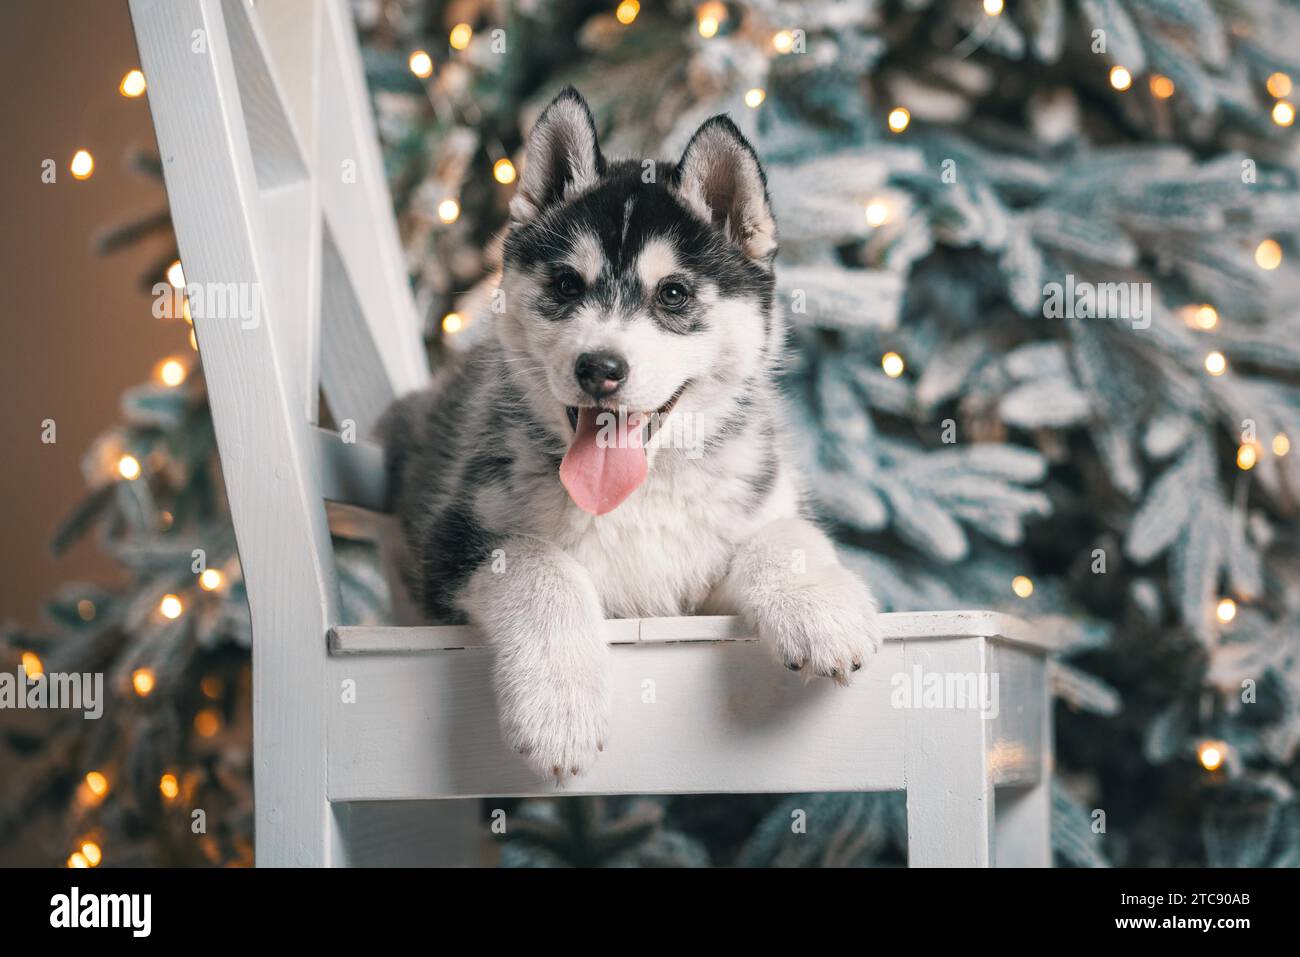 Chiot husky noir et blanc est allongé sur une chaise en bois blanc sur le fond d'un arbre de Noël avec des lumières festives Banque D'Images